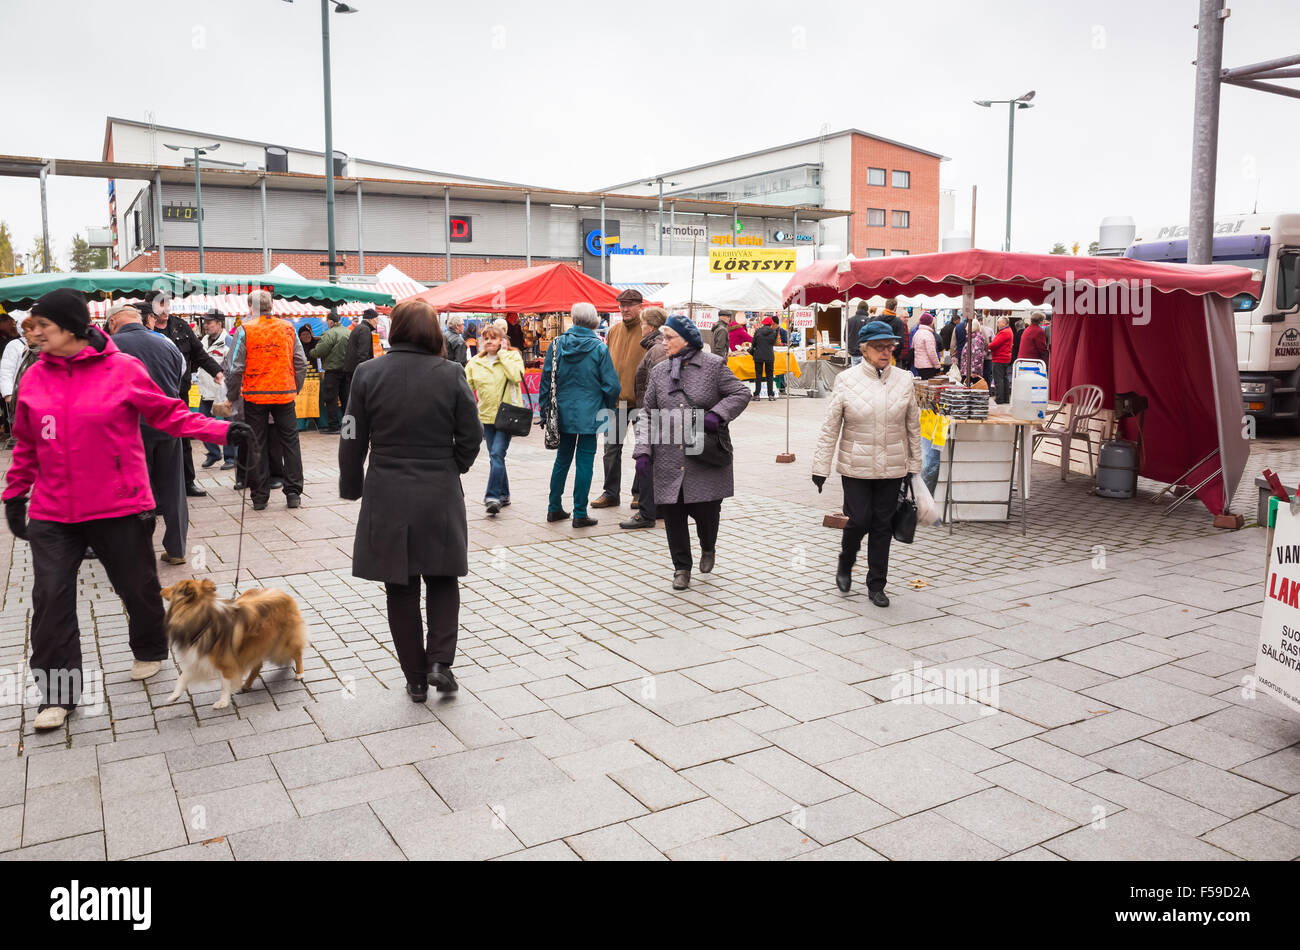 Imatra, Finnland - 25. Oktober 2015: Saisonale Straße Messe in Finnland, gehen die Menschen zwischen den Ständen mit Lebensmitteln Stockfoto